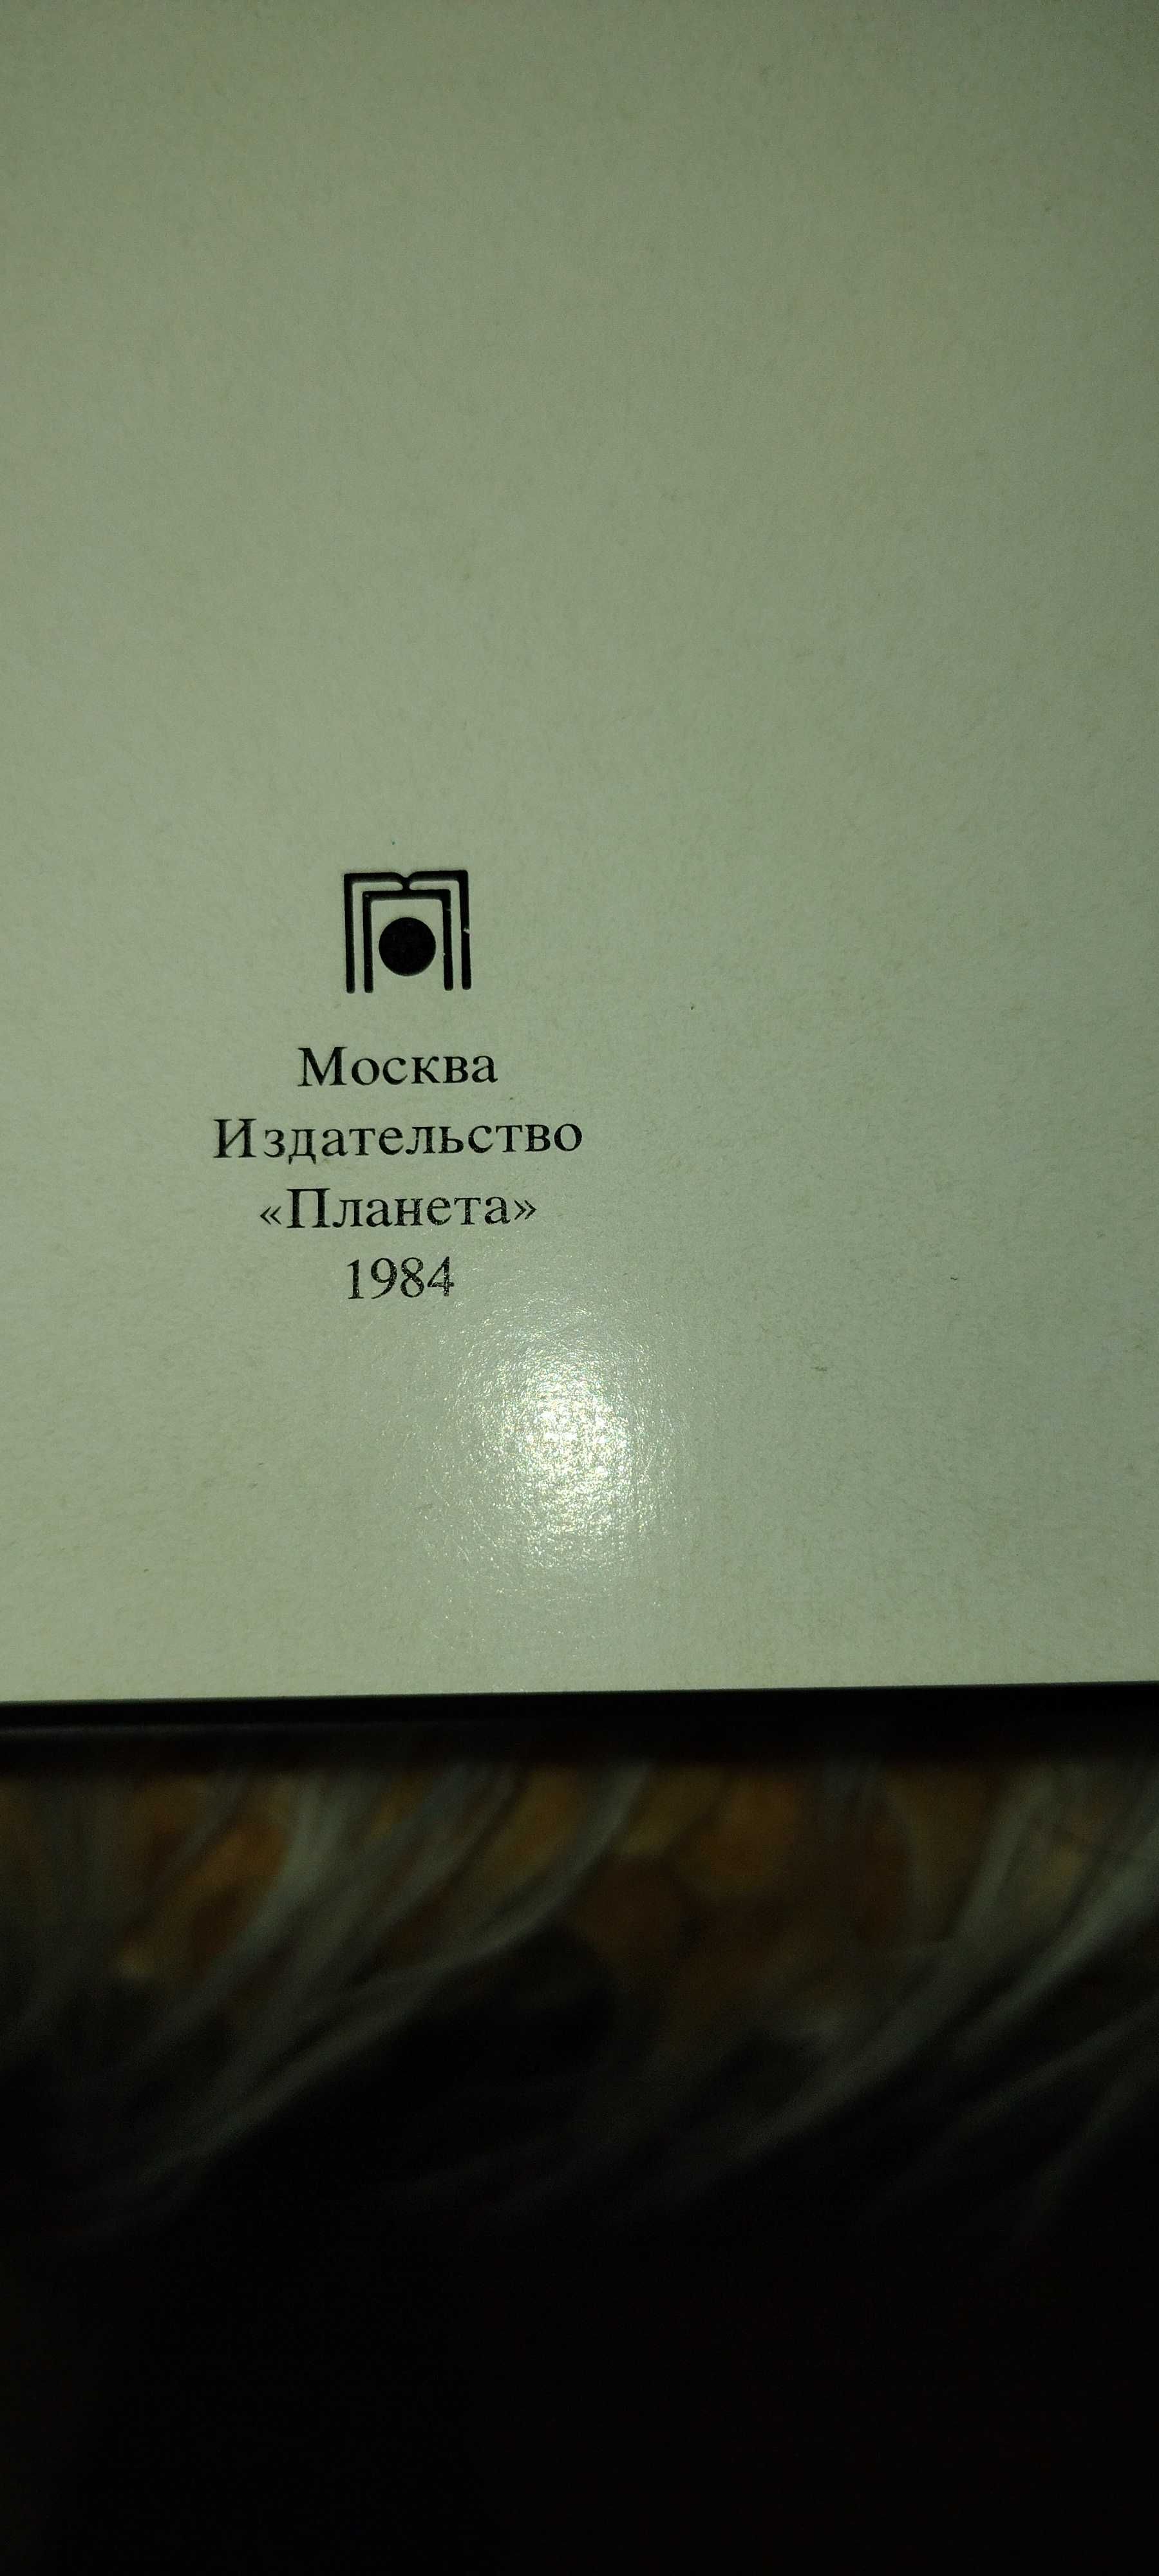 Książka w języku rosyjskim G.K.Źukow